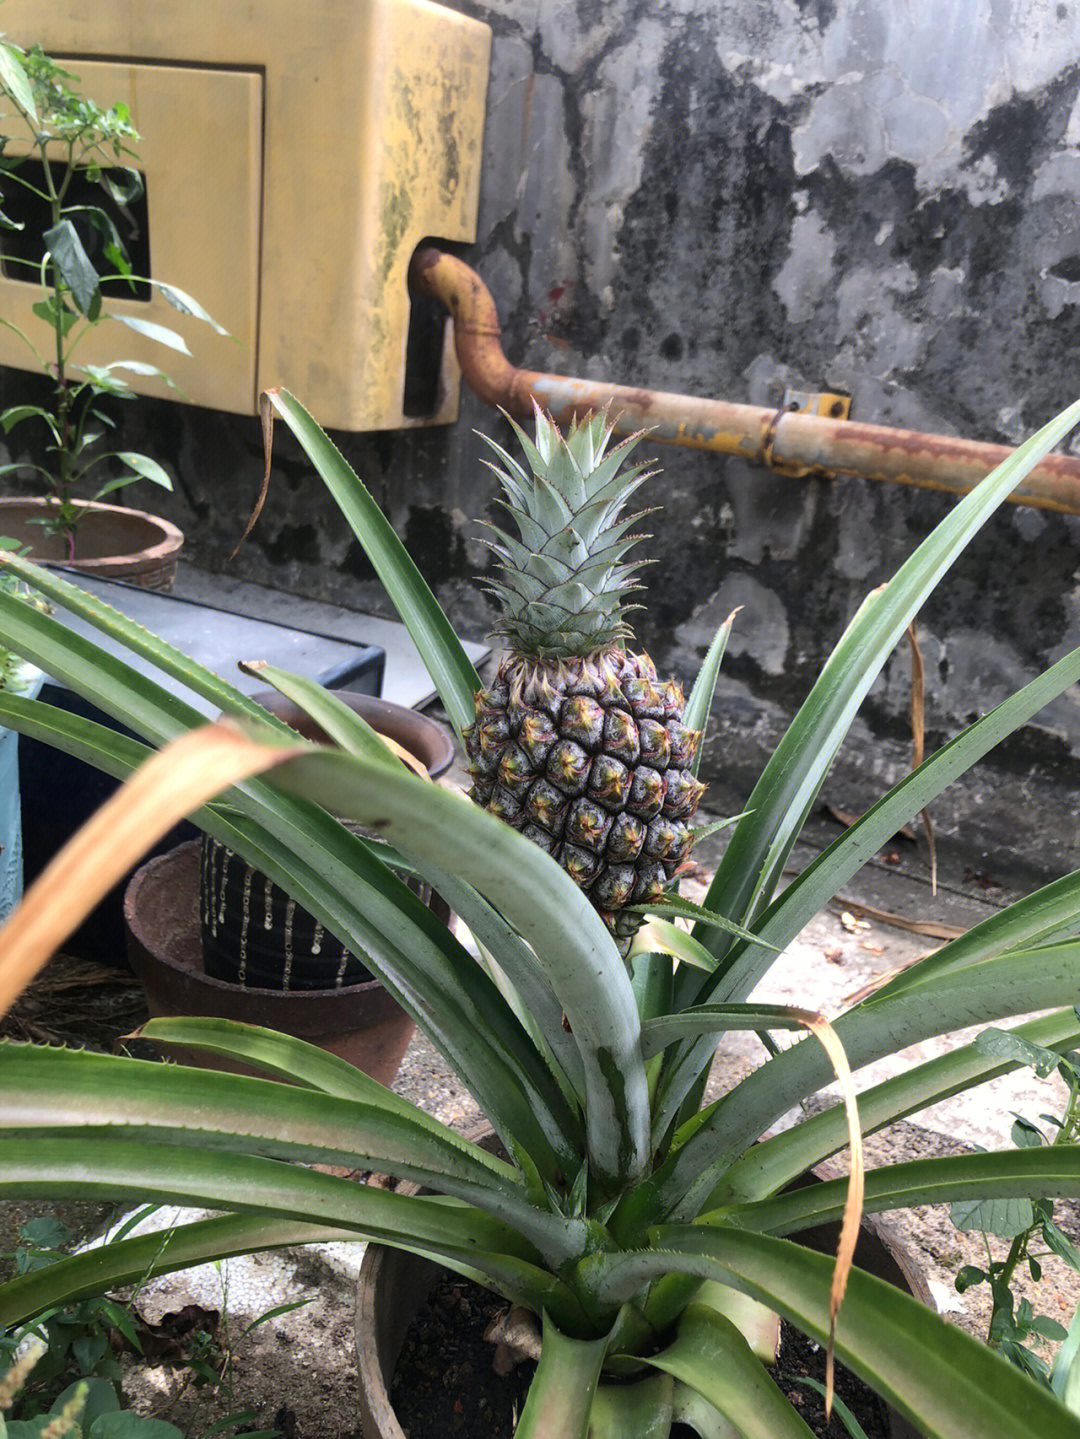 菠萝怎么长出来的图片